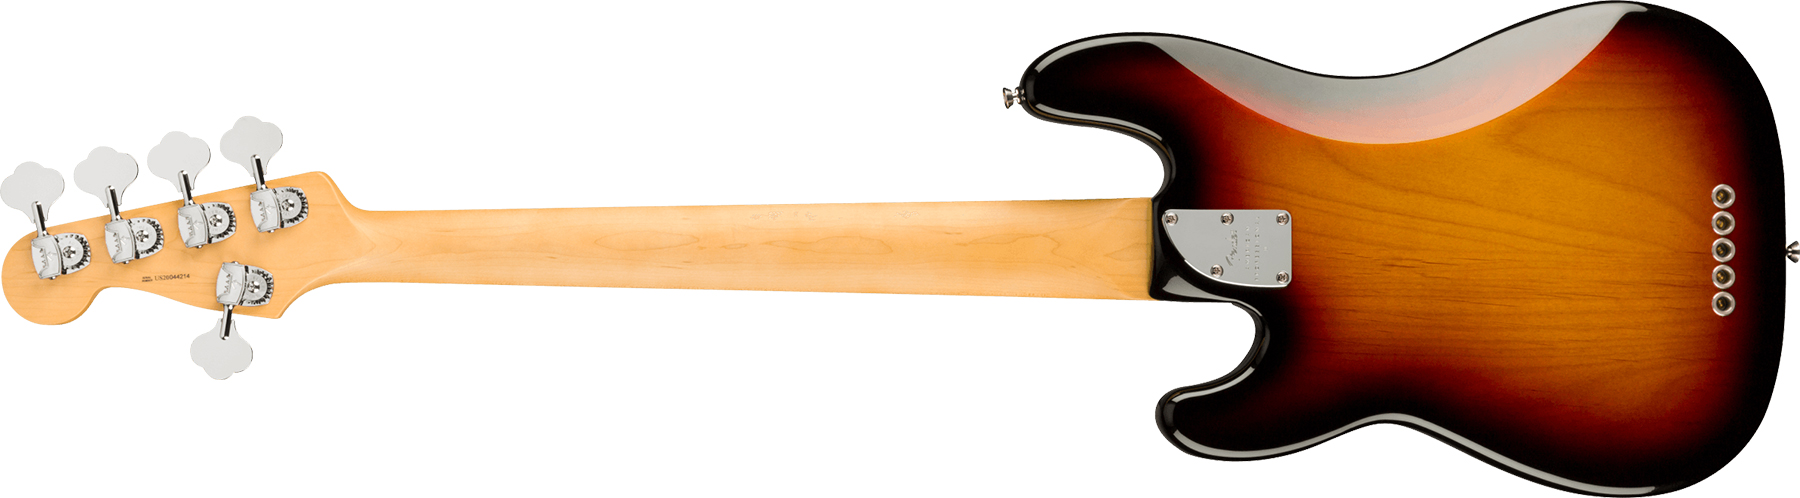 Fender Precision Bass V American Professional Ii Usa 5-cordes Rw - 3-color Sunburst - Bajo eléctrico de cuerpo sólido - Variation 1